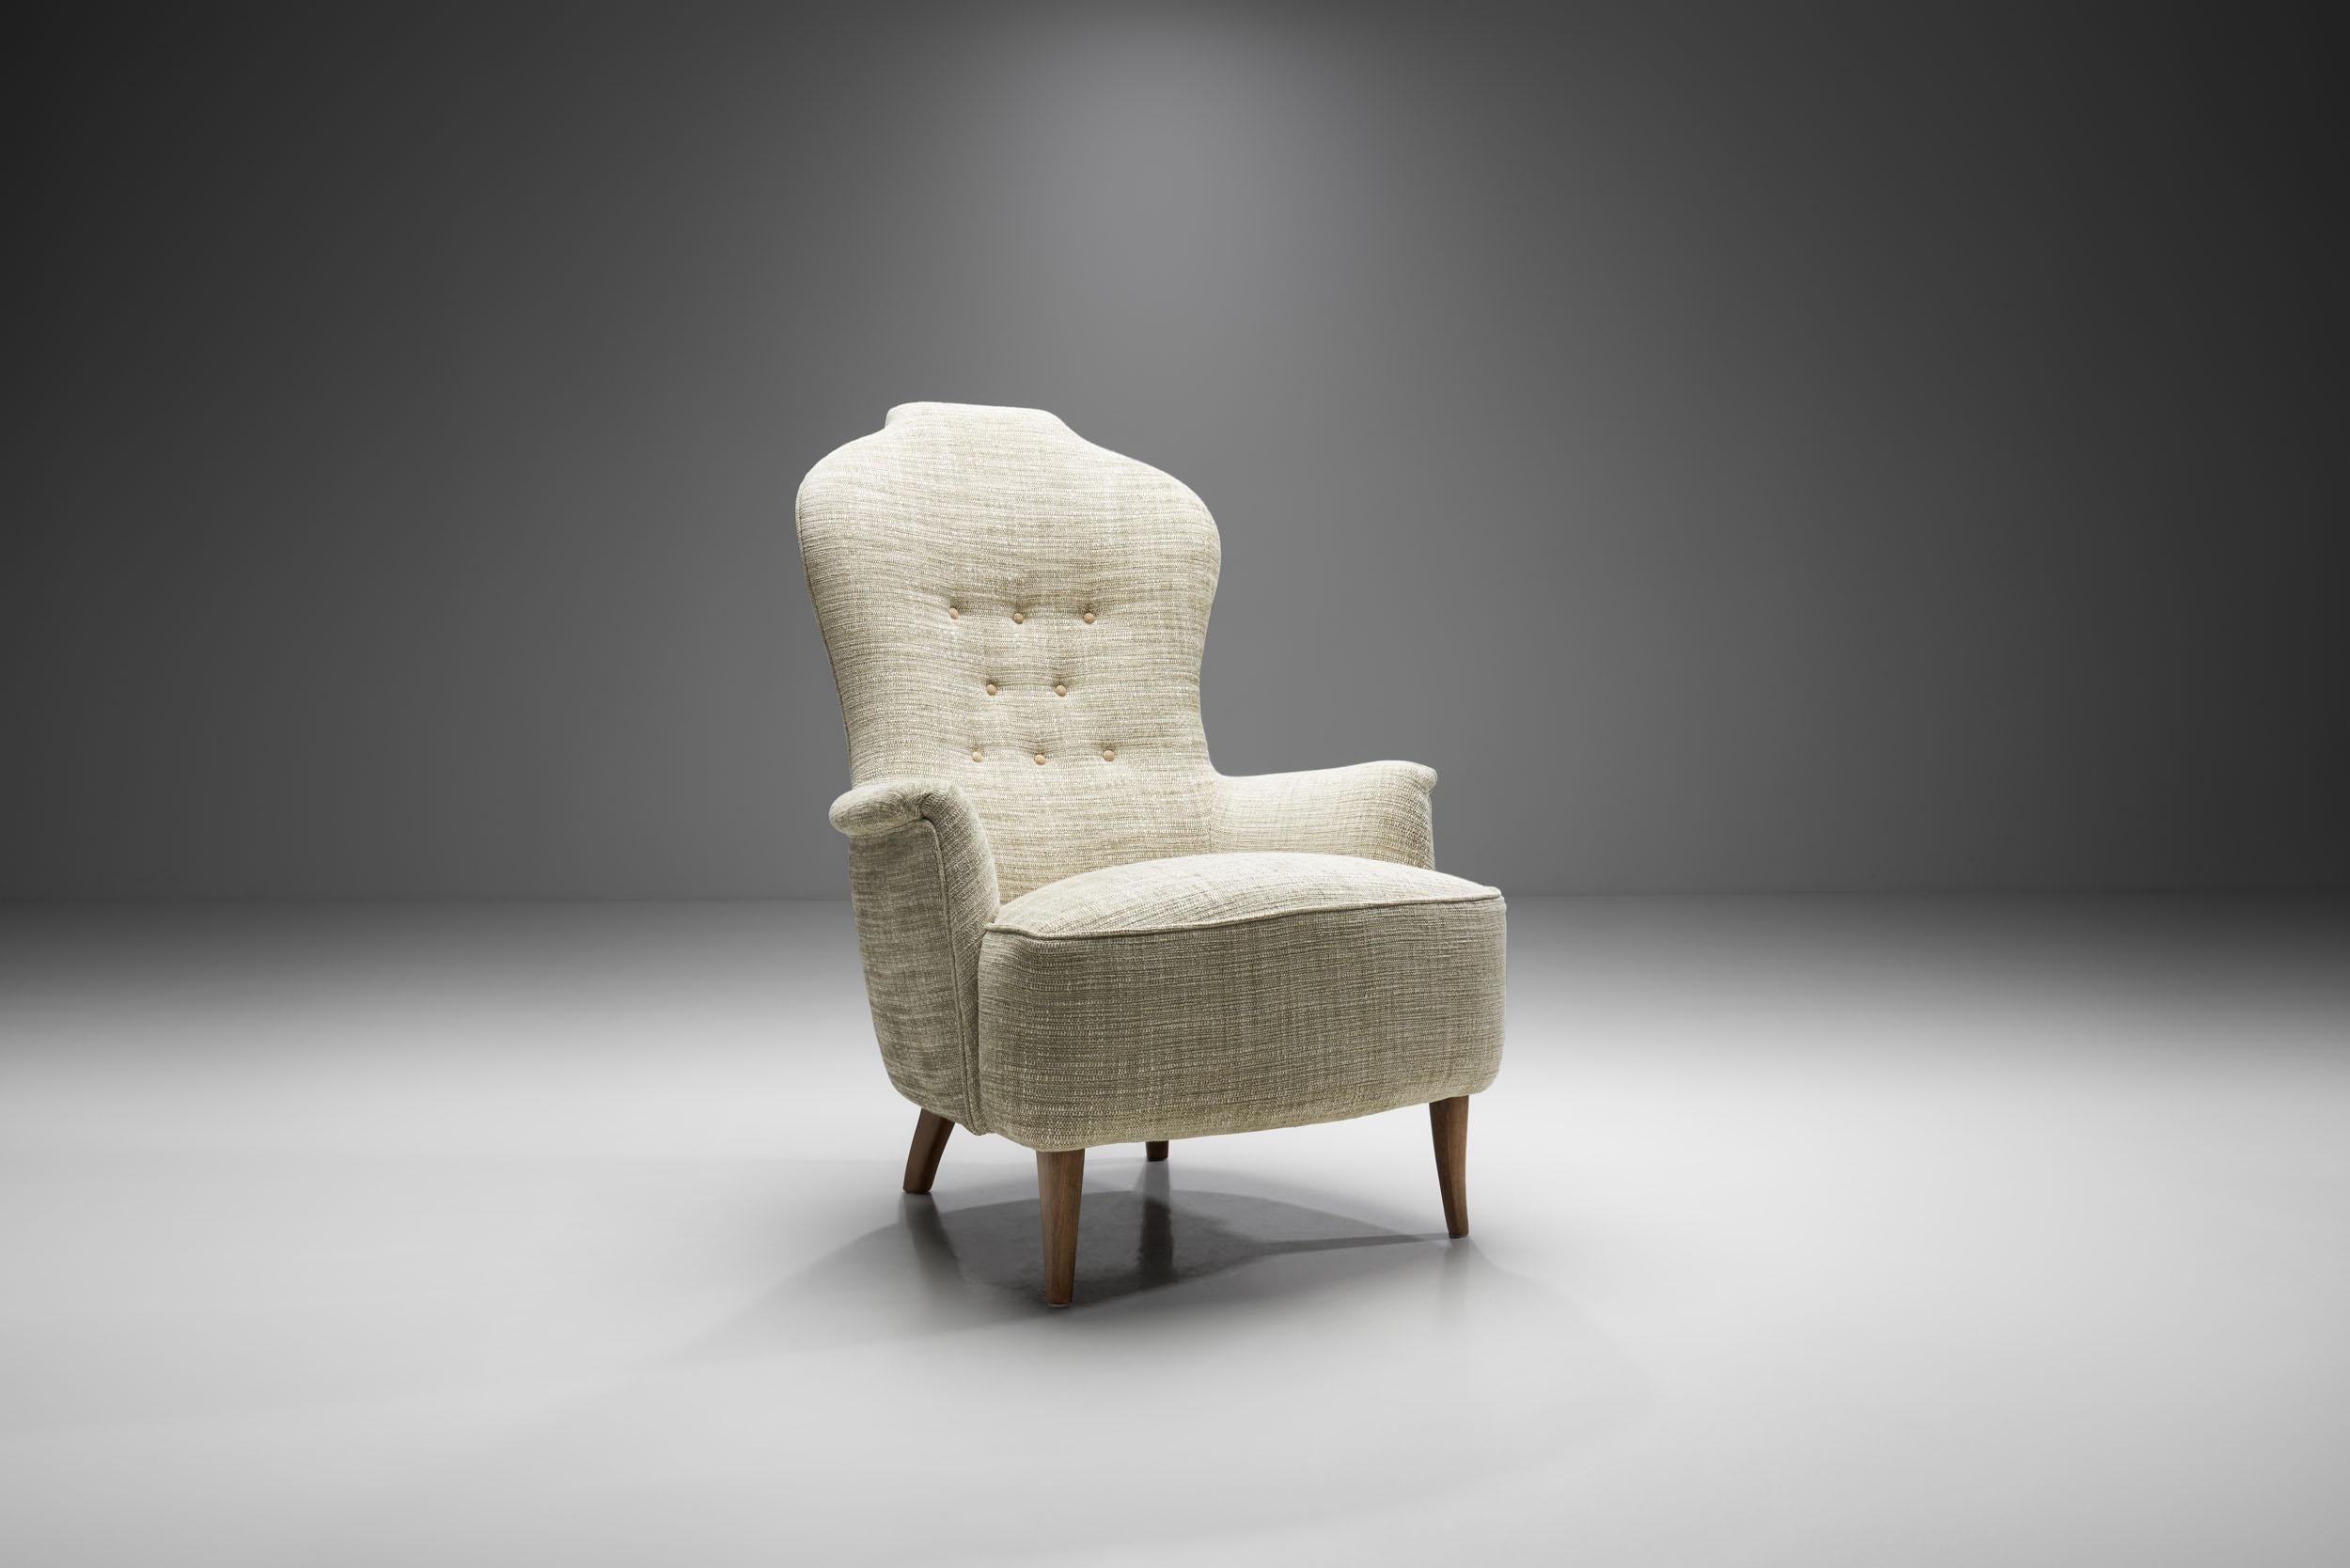 Au milieu des années 1950, Carl Malmsten a accordé à dix petites entreprises de meubles, principalement dans le Småland, l'honneur de fabriquer une série de certains de ses produits. Parmi les premières pièces figure Farmor, qui est rapidement